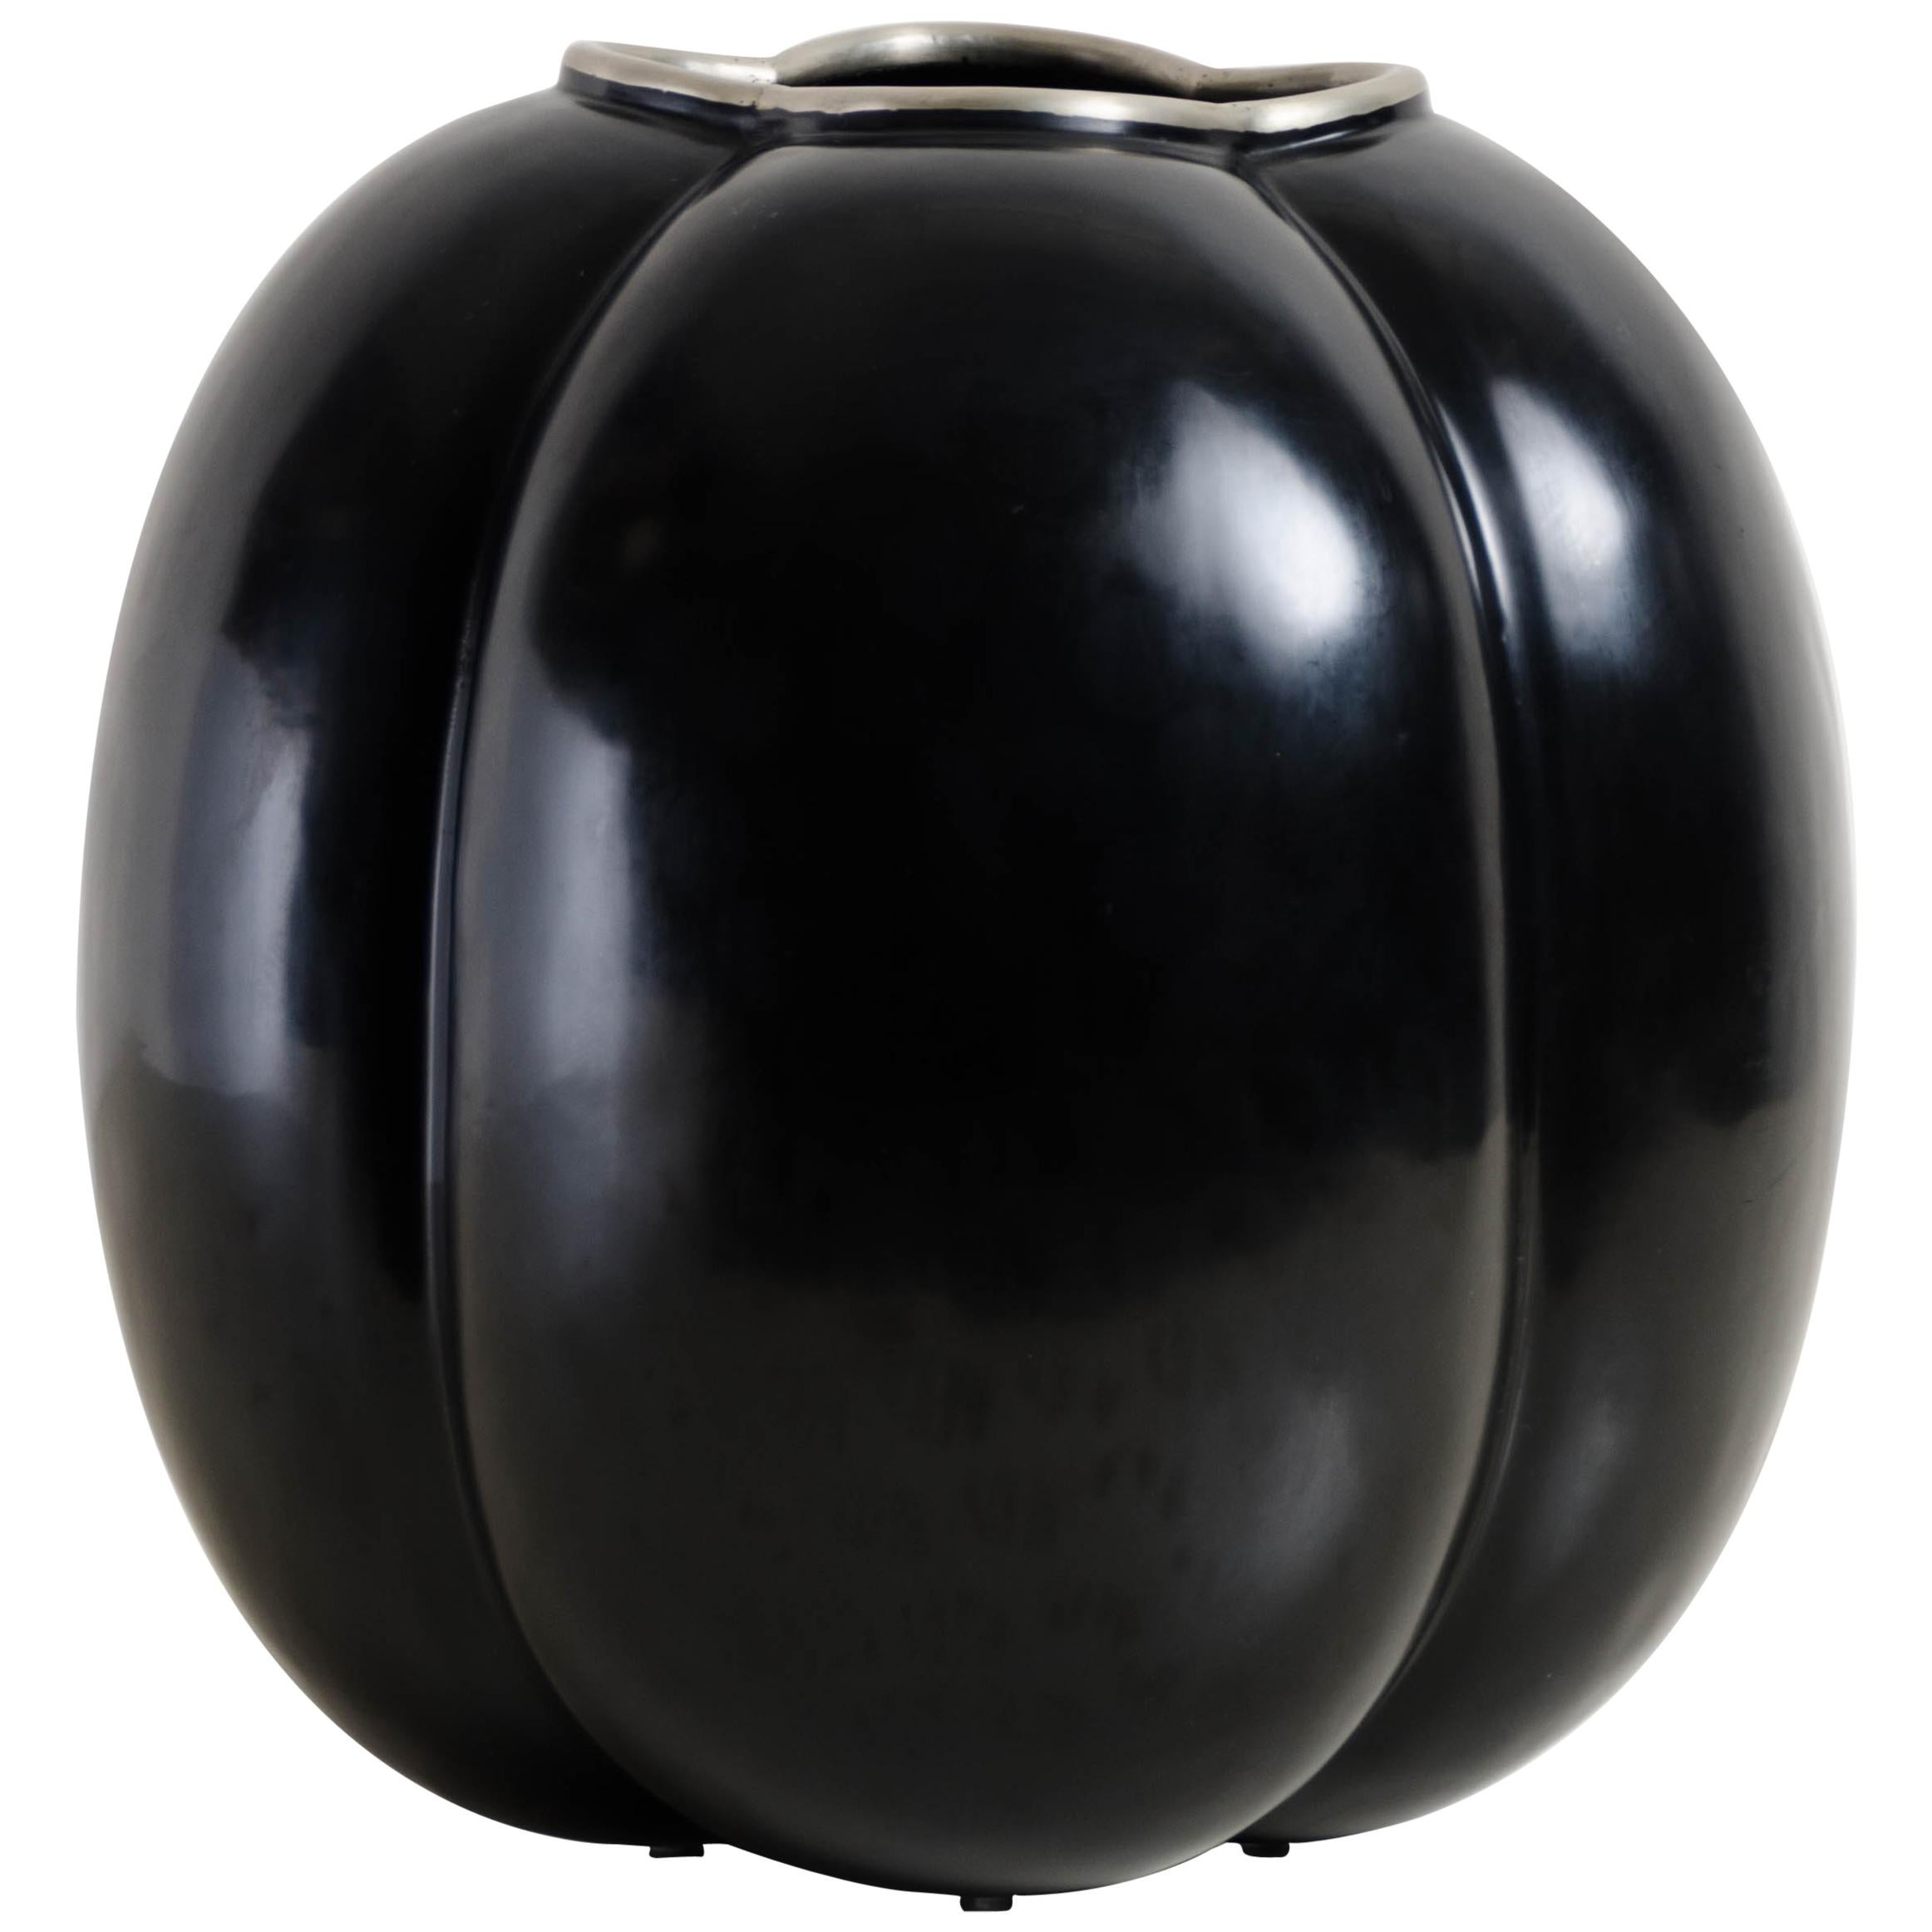 Hohe Tang-Vase, schwarzer Lack von Robert Kuo, handgefertigt, limitierte Auflage